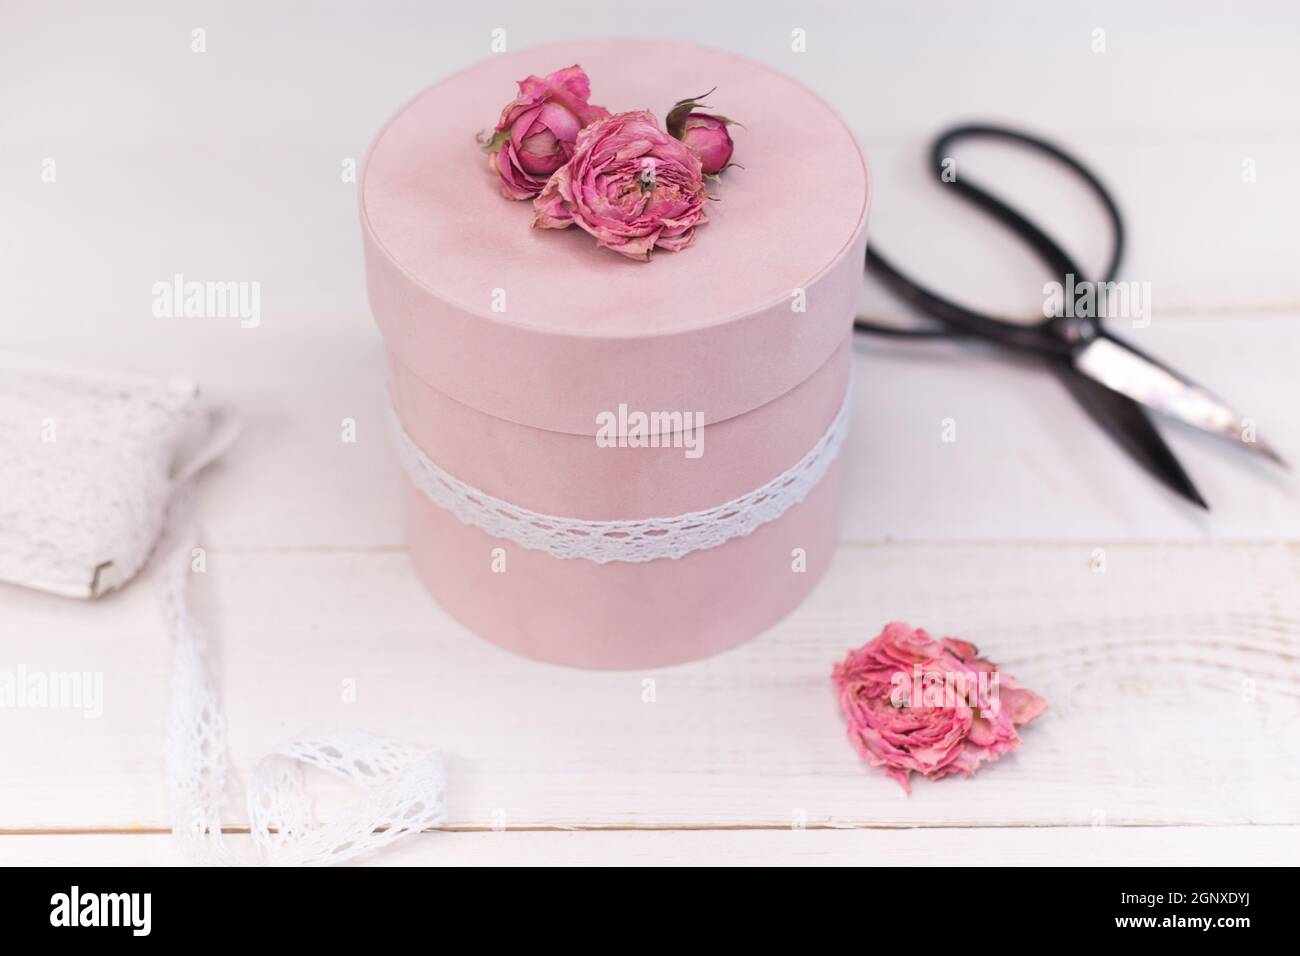 Magnifique emballage-cadeau rond rose est décoré de roses Photo Stock -  Alamy